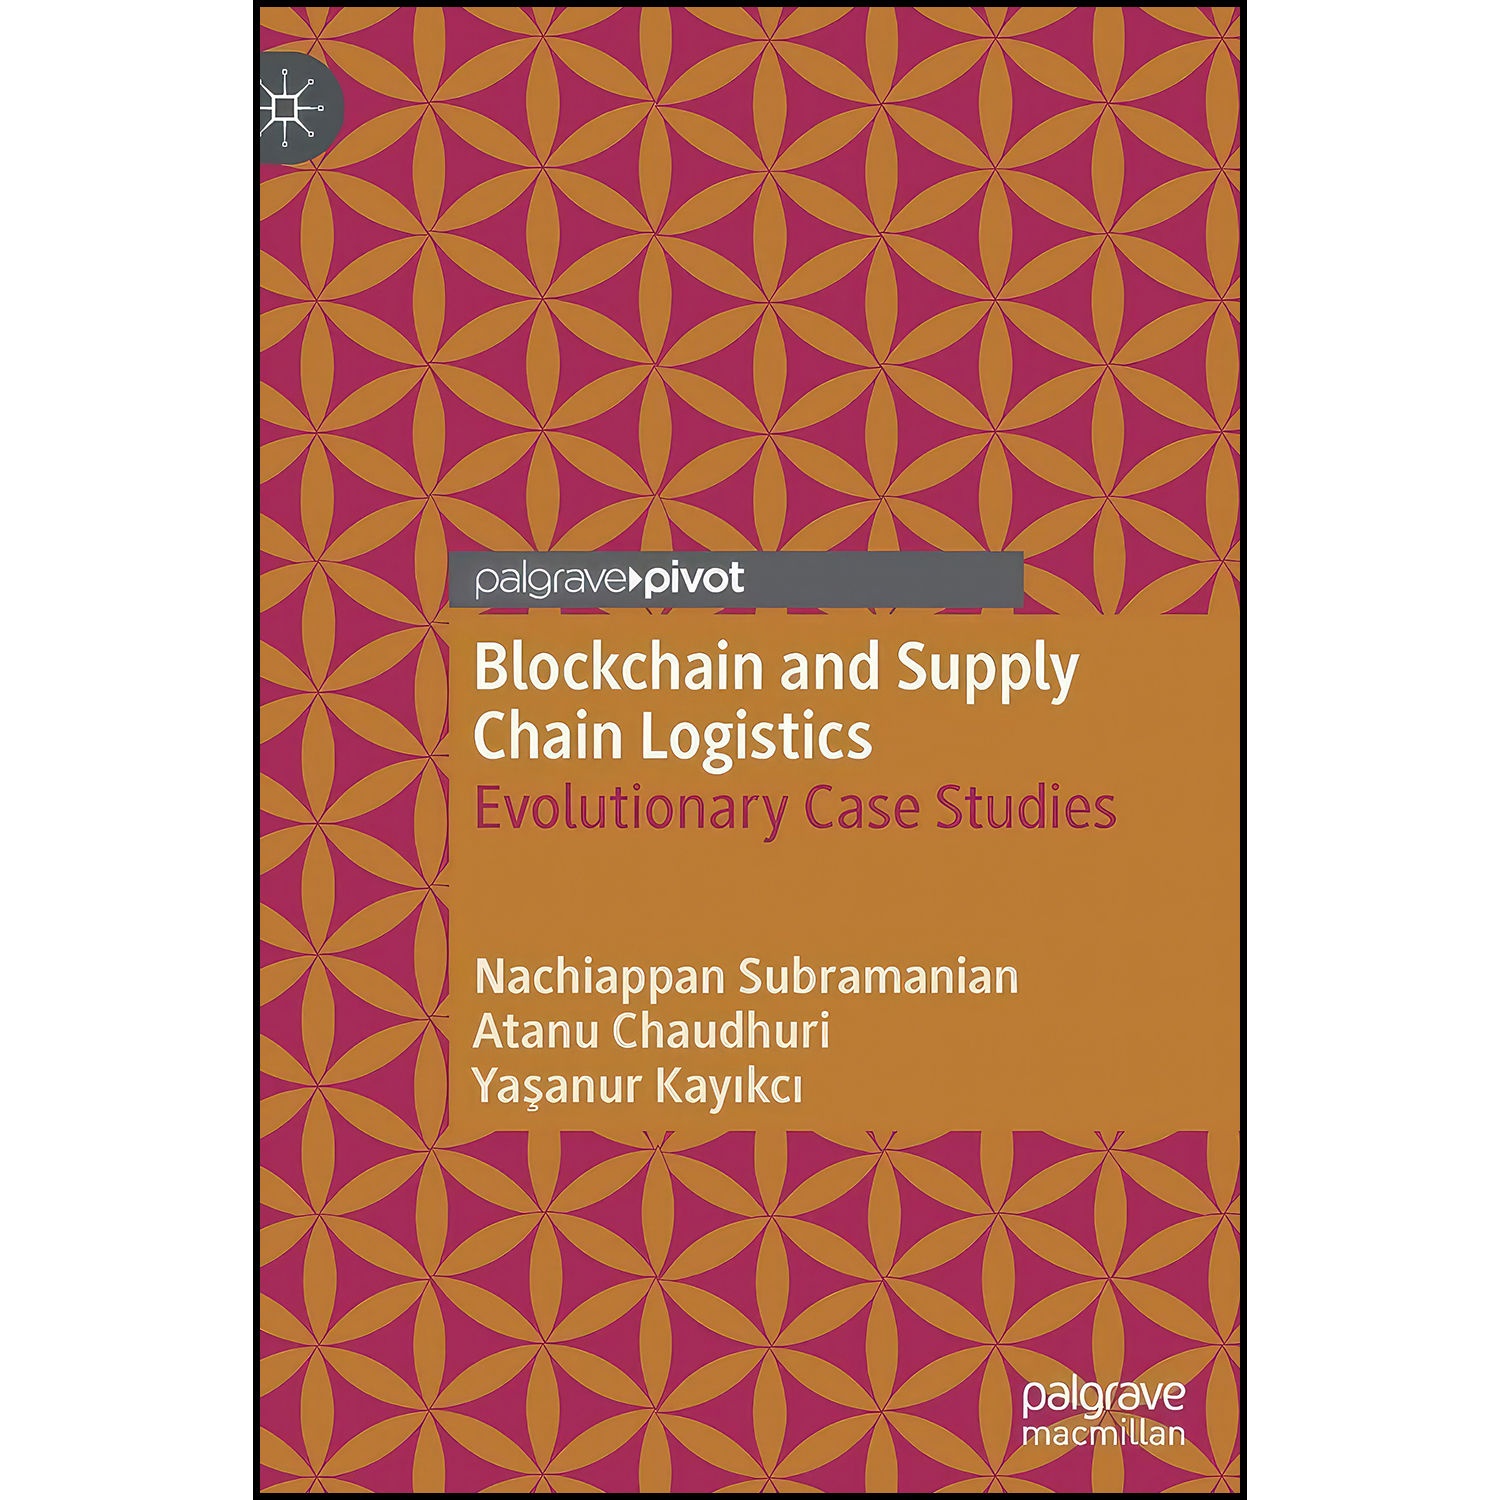 کتاب Blockchain and Supply Chain Logistics اثر جمعي از نويسندگان انتشارات Palgrave Pivot